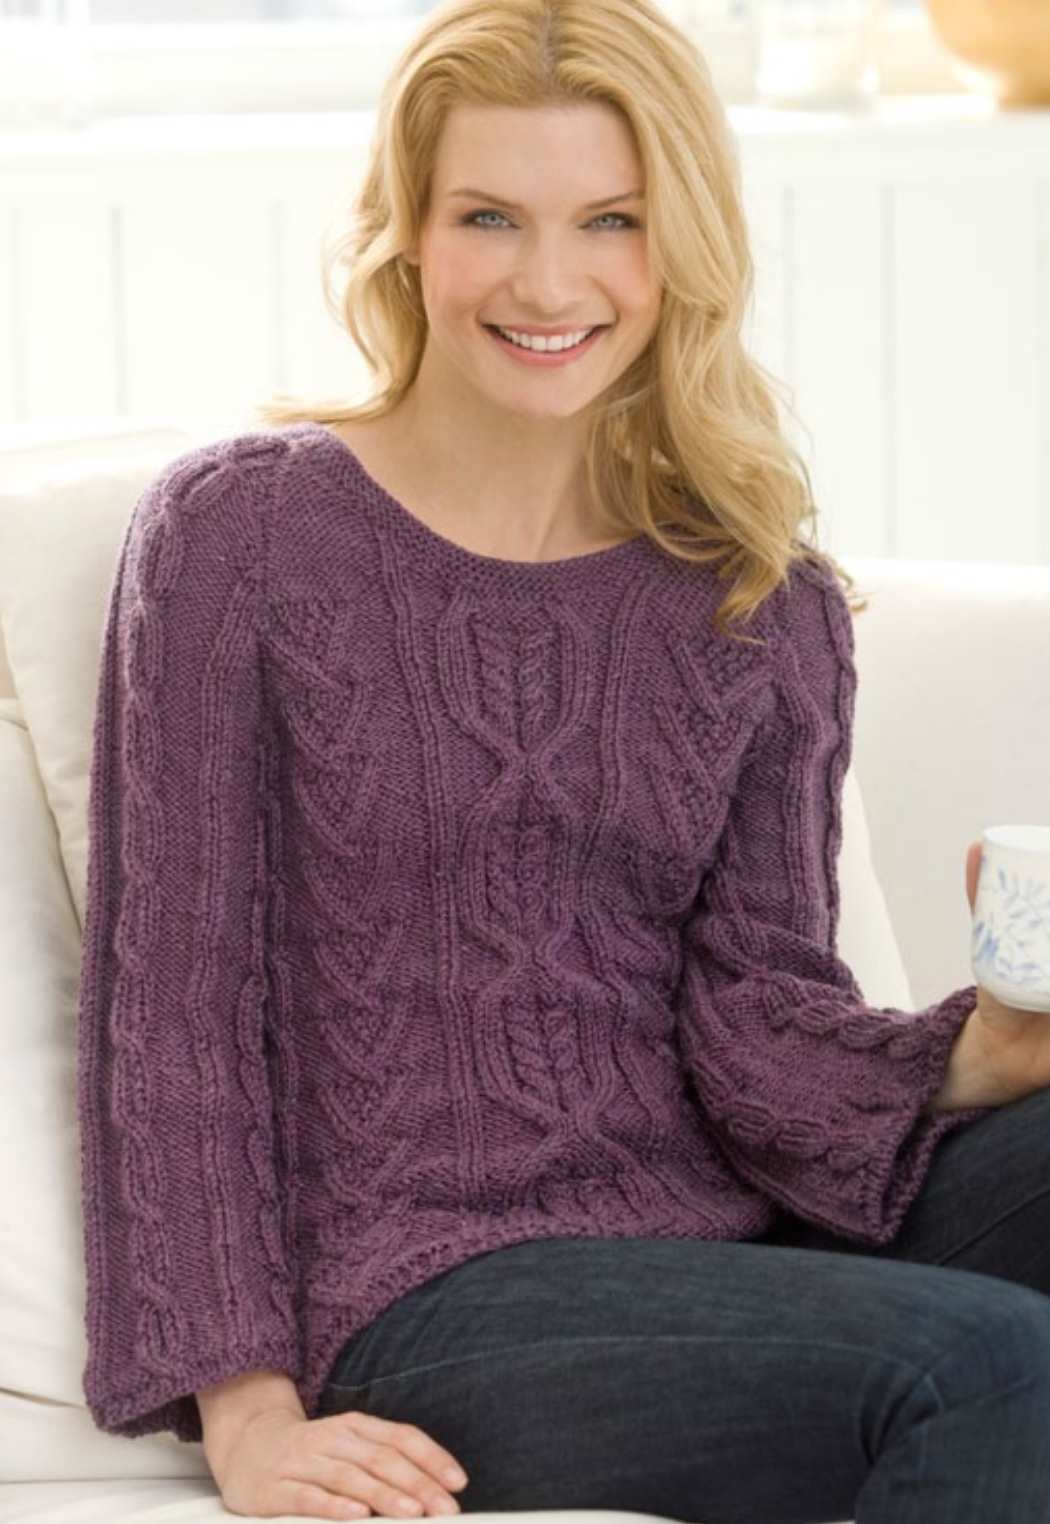 New Aran Sweater Free Knitting Pattern - Knitting Bee